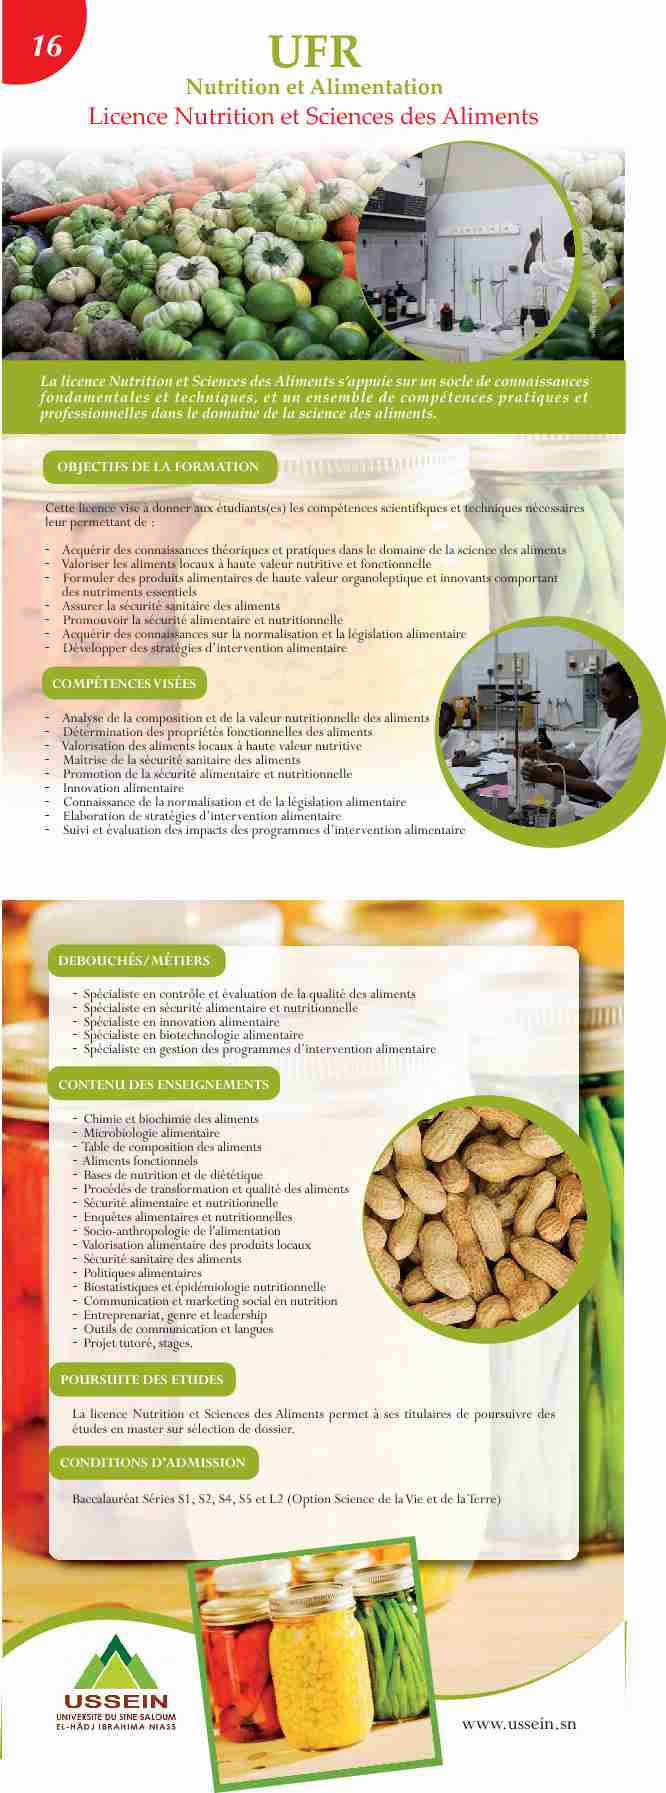 Licence Nutrition et Sciences des Aliments